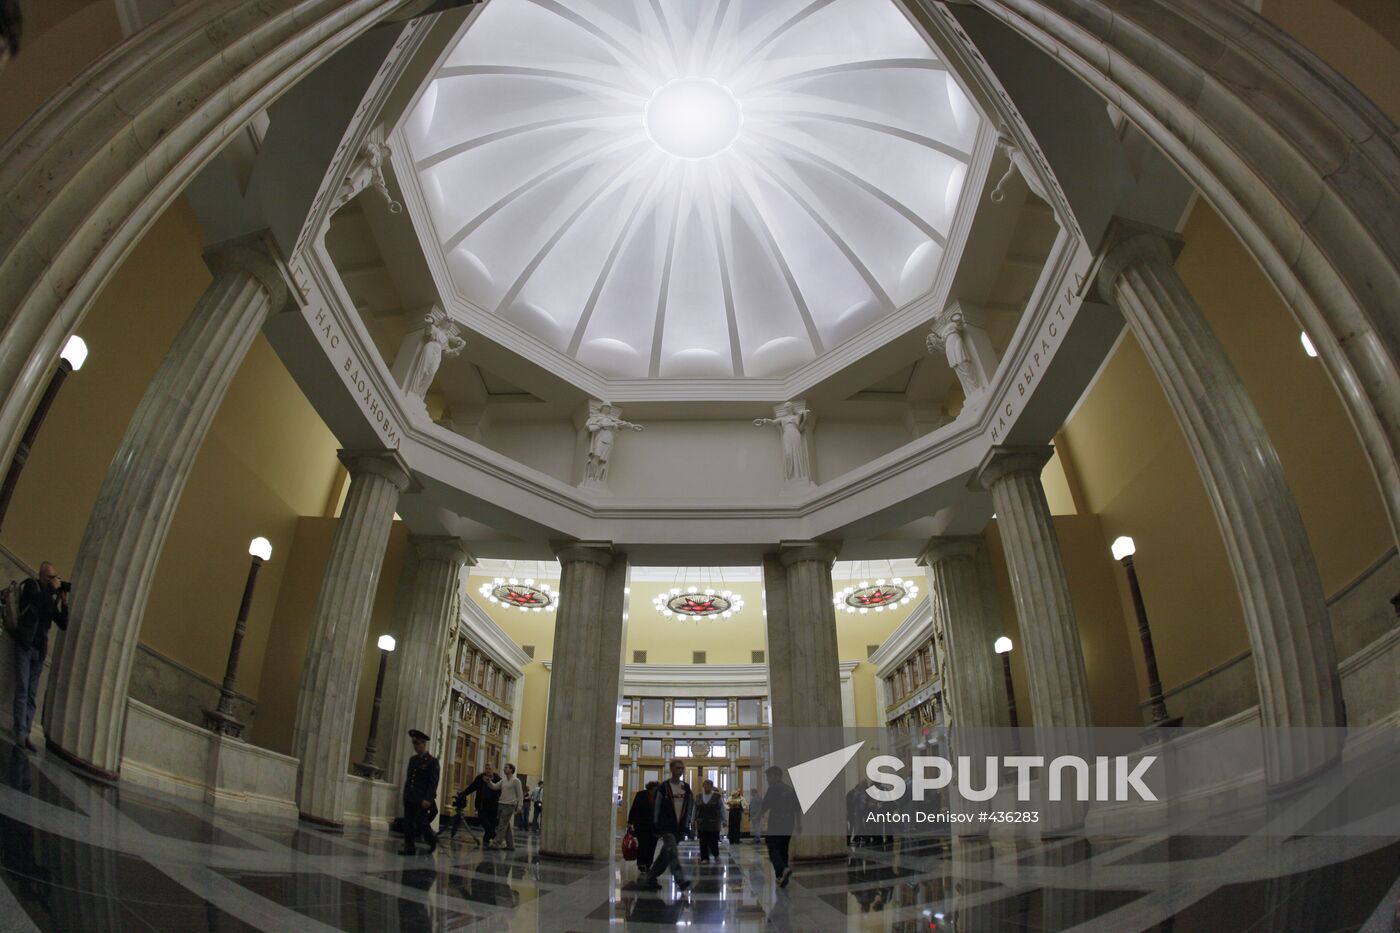 Kurskaya-Koltsevaya subway station lobby re-opened